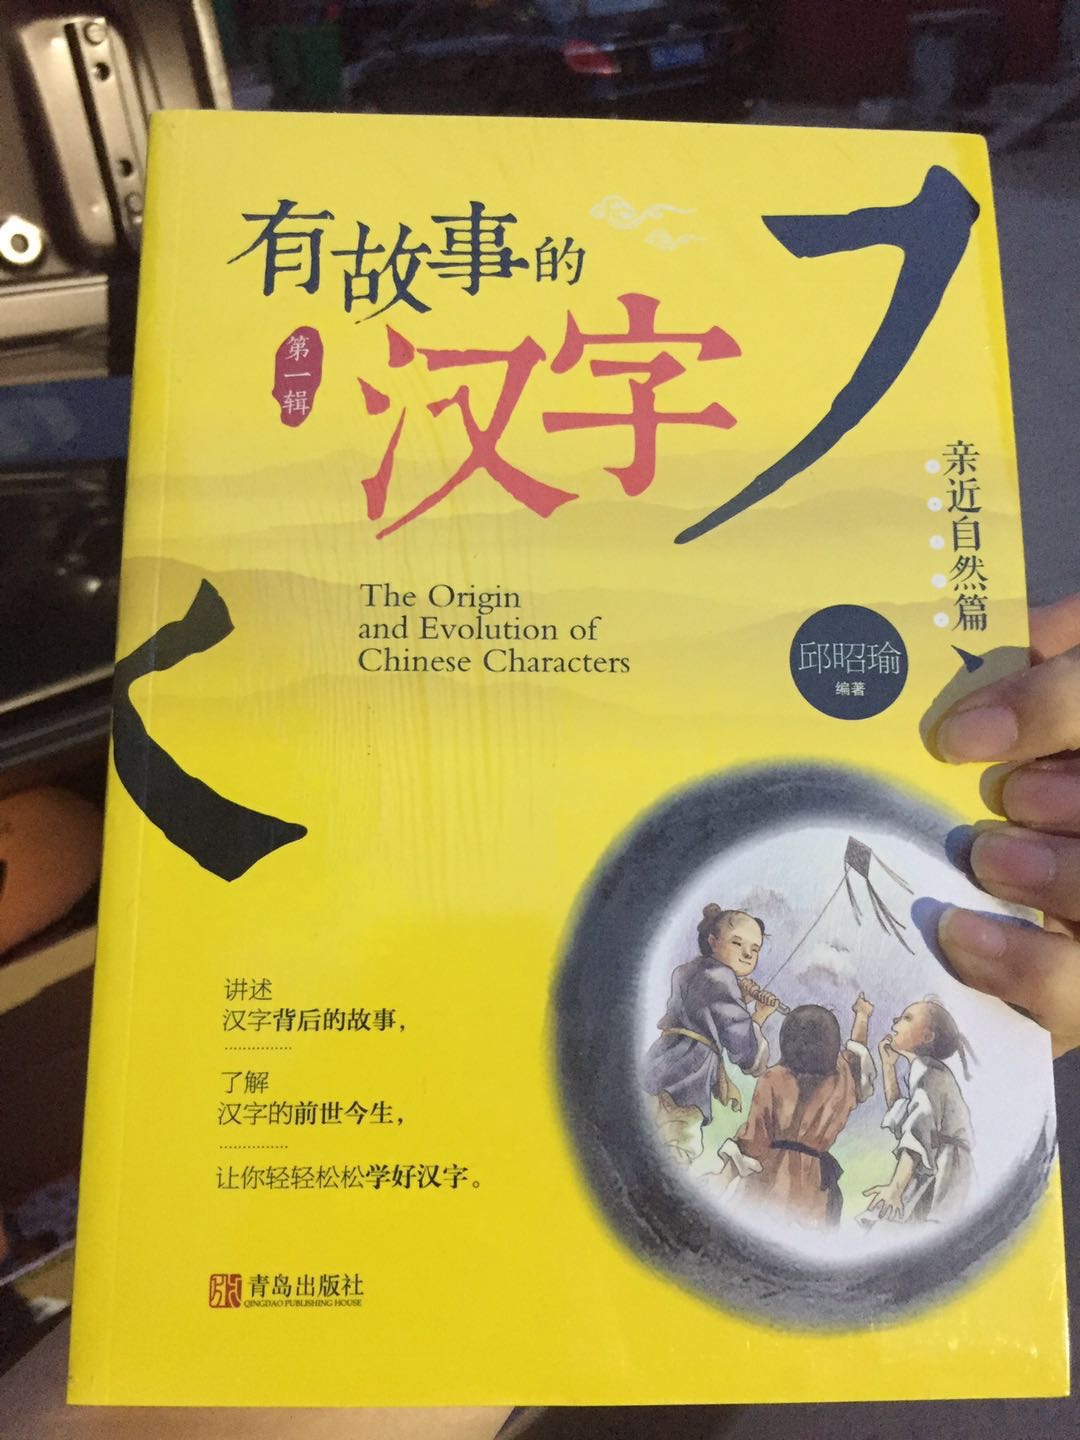 学校老师推荐的，很美，让孩子知道中国文化的魅力所在